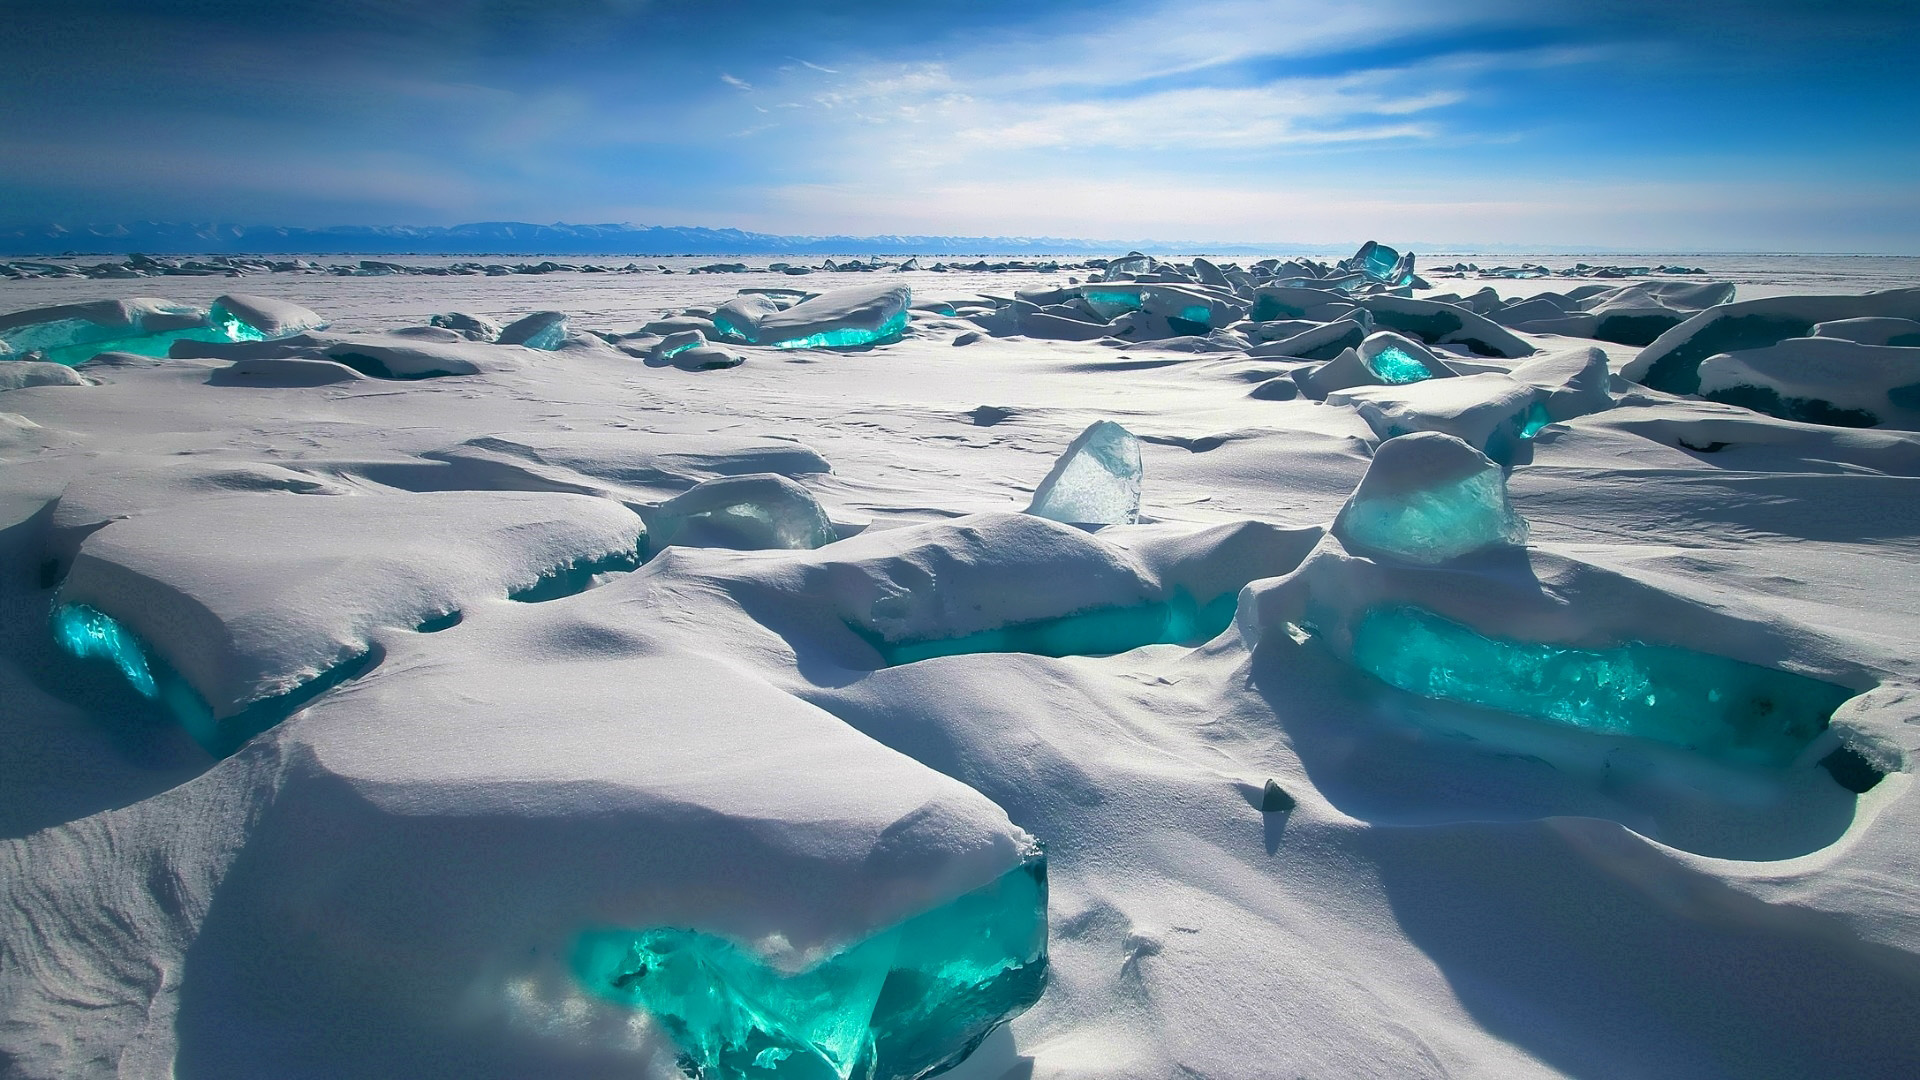 西伯利亚,贝加尔湖,冬天,冰,风景桌面壁纸